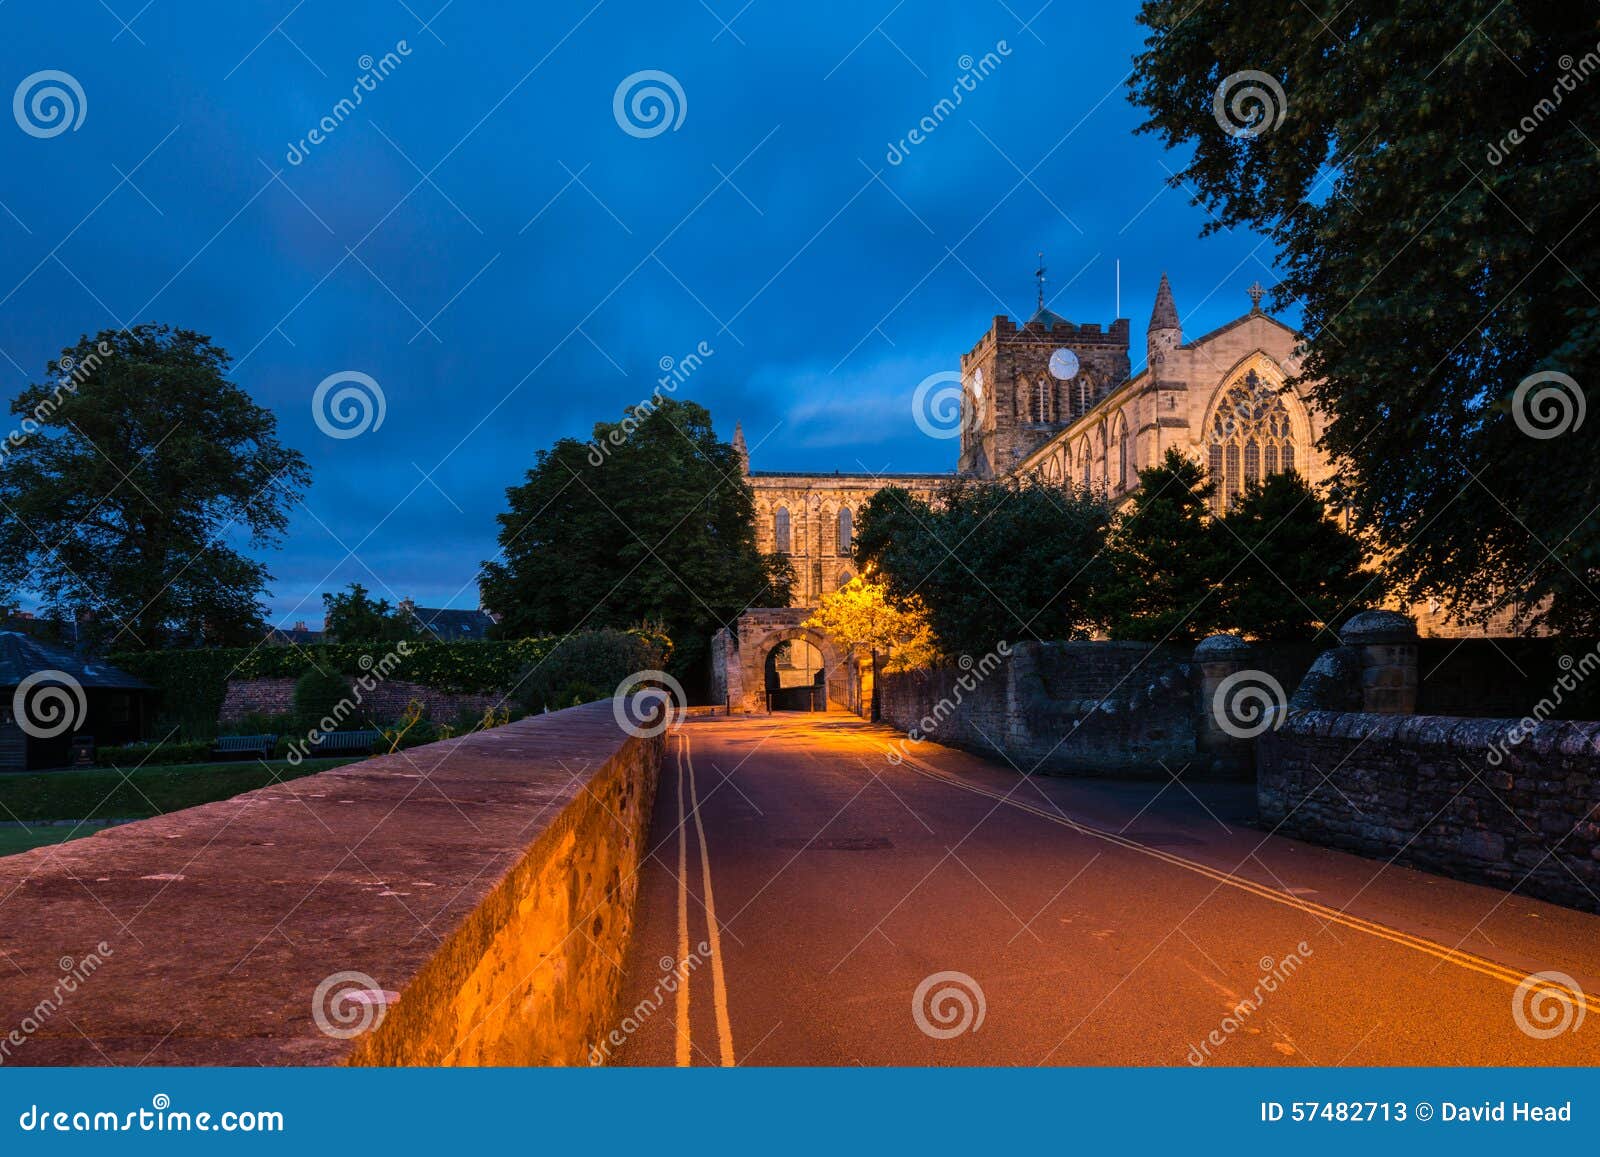 hexham abbey at night